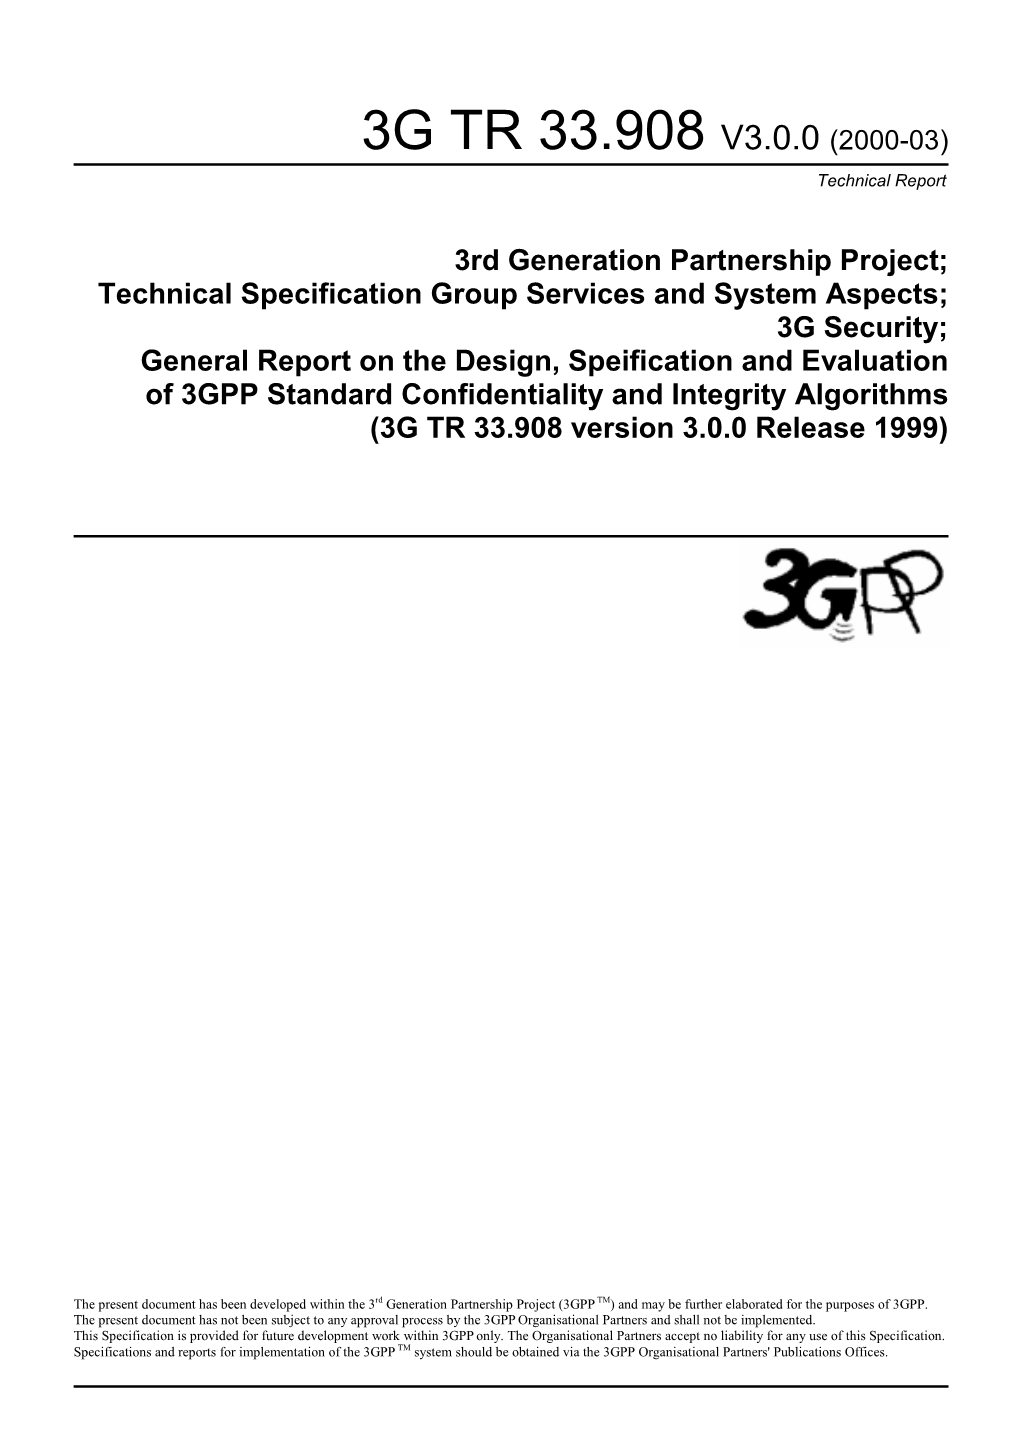 3G TR 33.908 V3.0.0 (2000-03) : 3Rd Generation Partnership